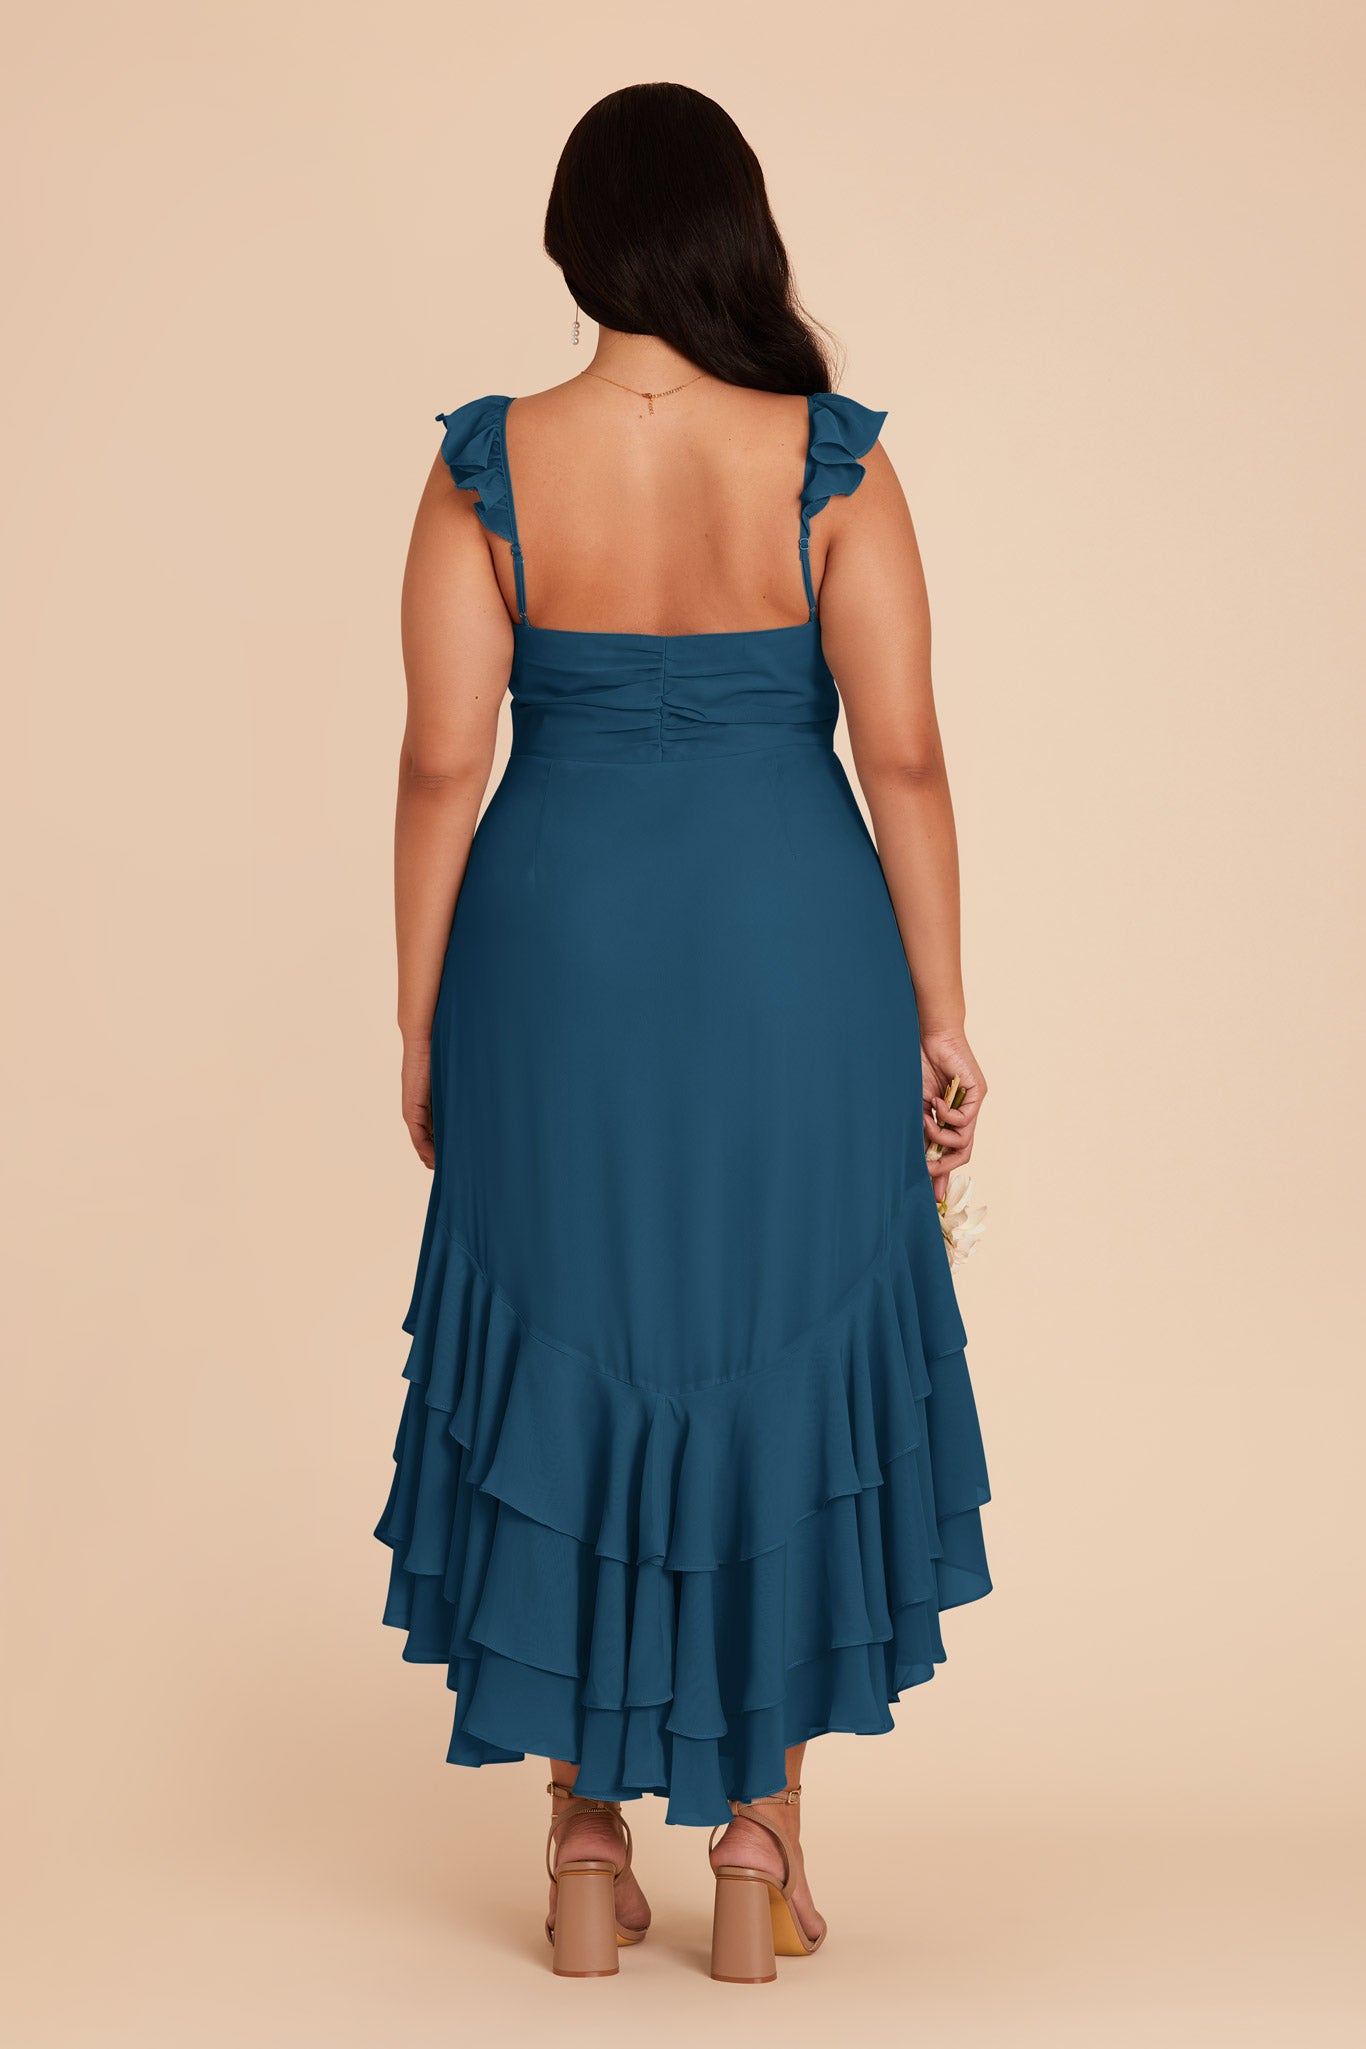 Ocean Blue Ginny Chiffon Dress by Birdy Grey